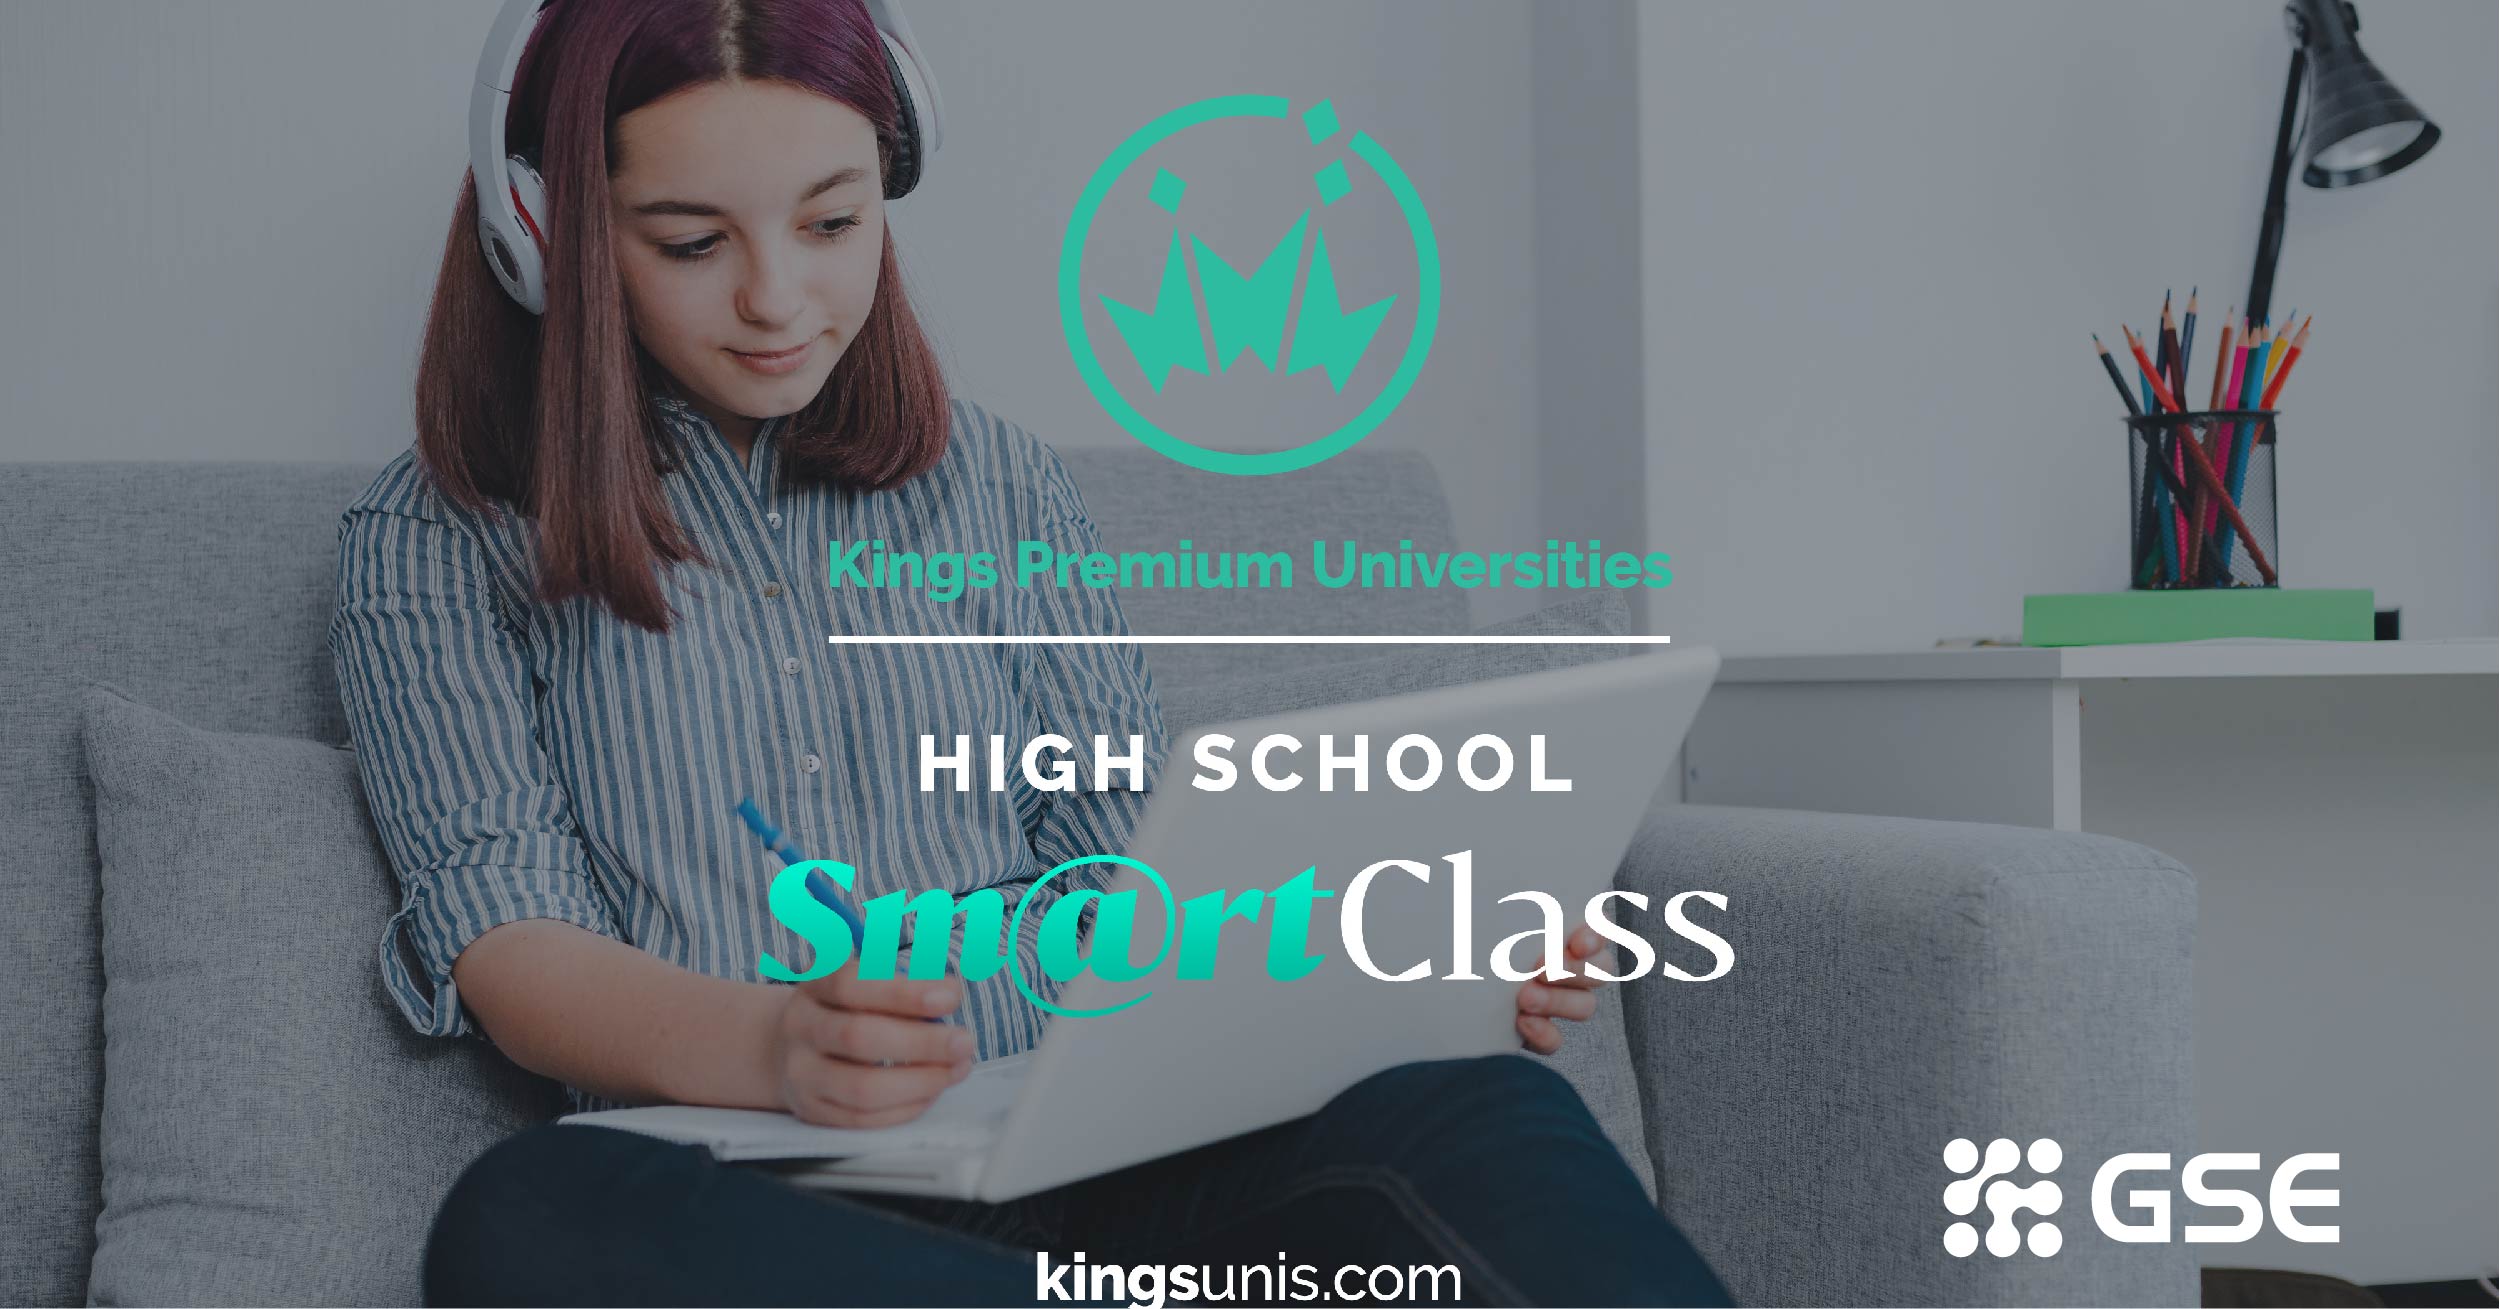 Du học Trung học Mỹ không yêu cầu VISA với chương trình Smart Class từ Kings Education